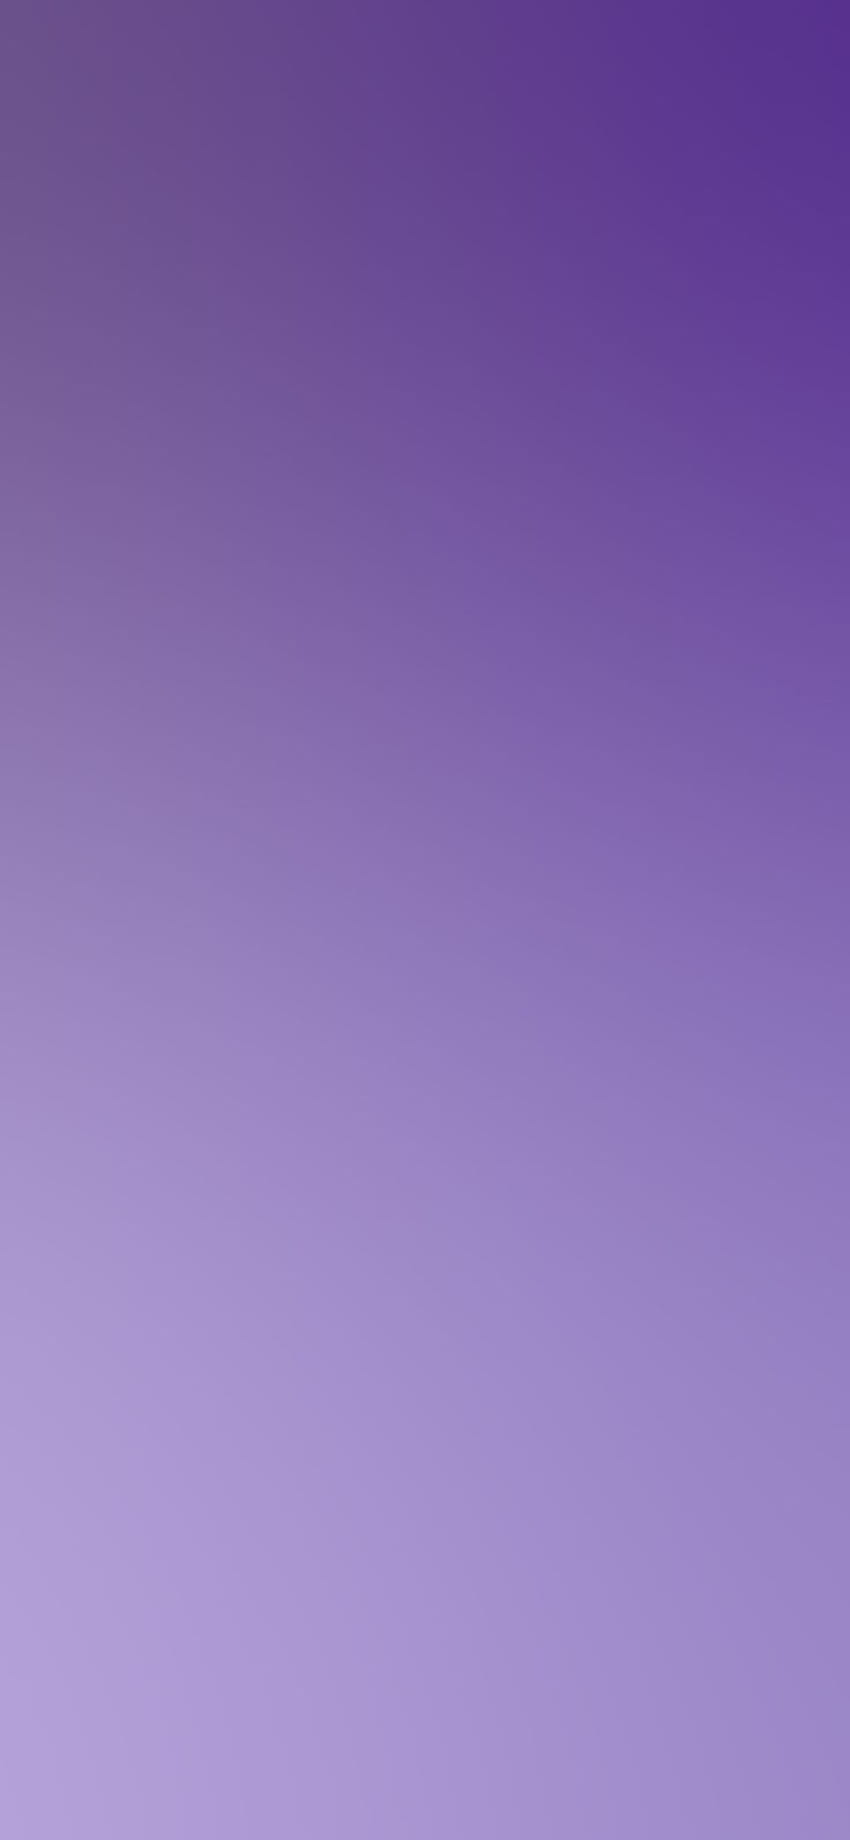 iPhone X : violette weiche Unschärfeabstufung via für das iPhone X Magazin Ihre tägliche Quelle für das Beste auf der ganzen Welt, Lavender HD-Handy-Hintergrundbild